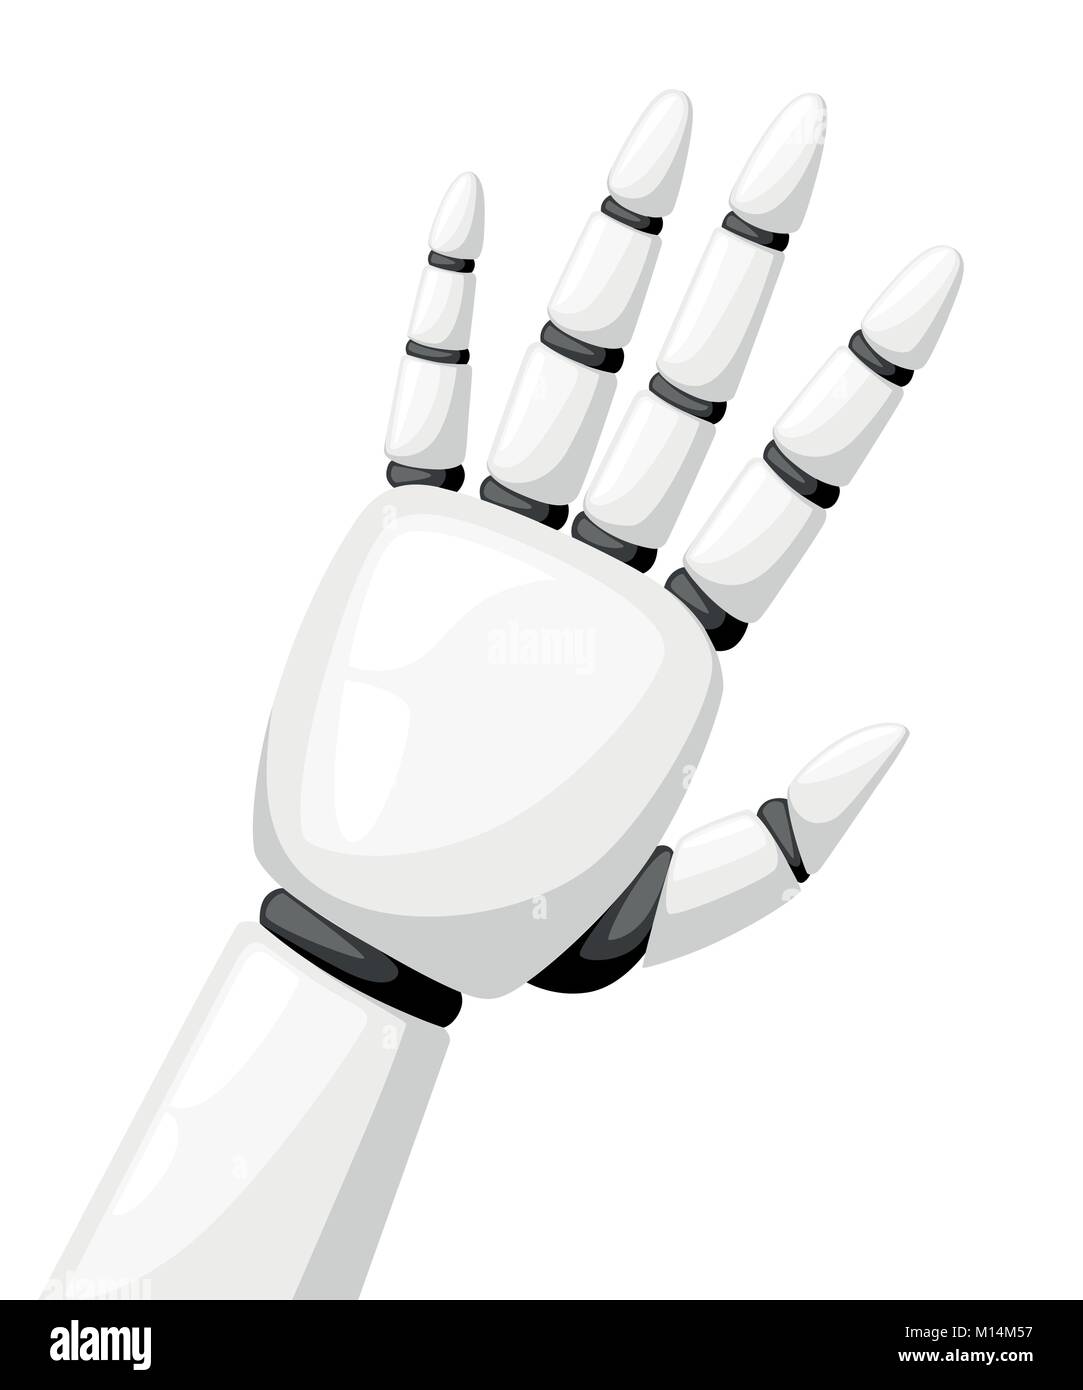 Robot blanc main ou bras robotique pour prothèse vector illustration isolé sur fond blanc page de site web et mobile app design Illustration de Vecteur